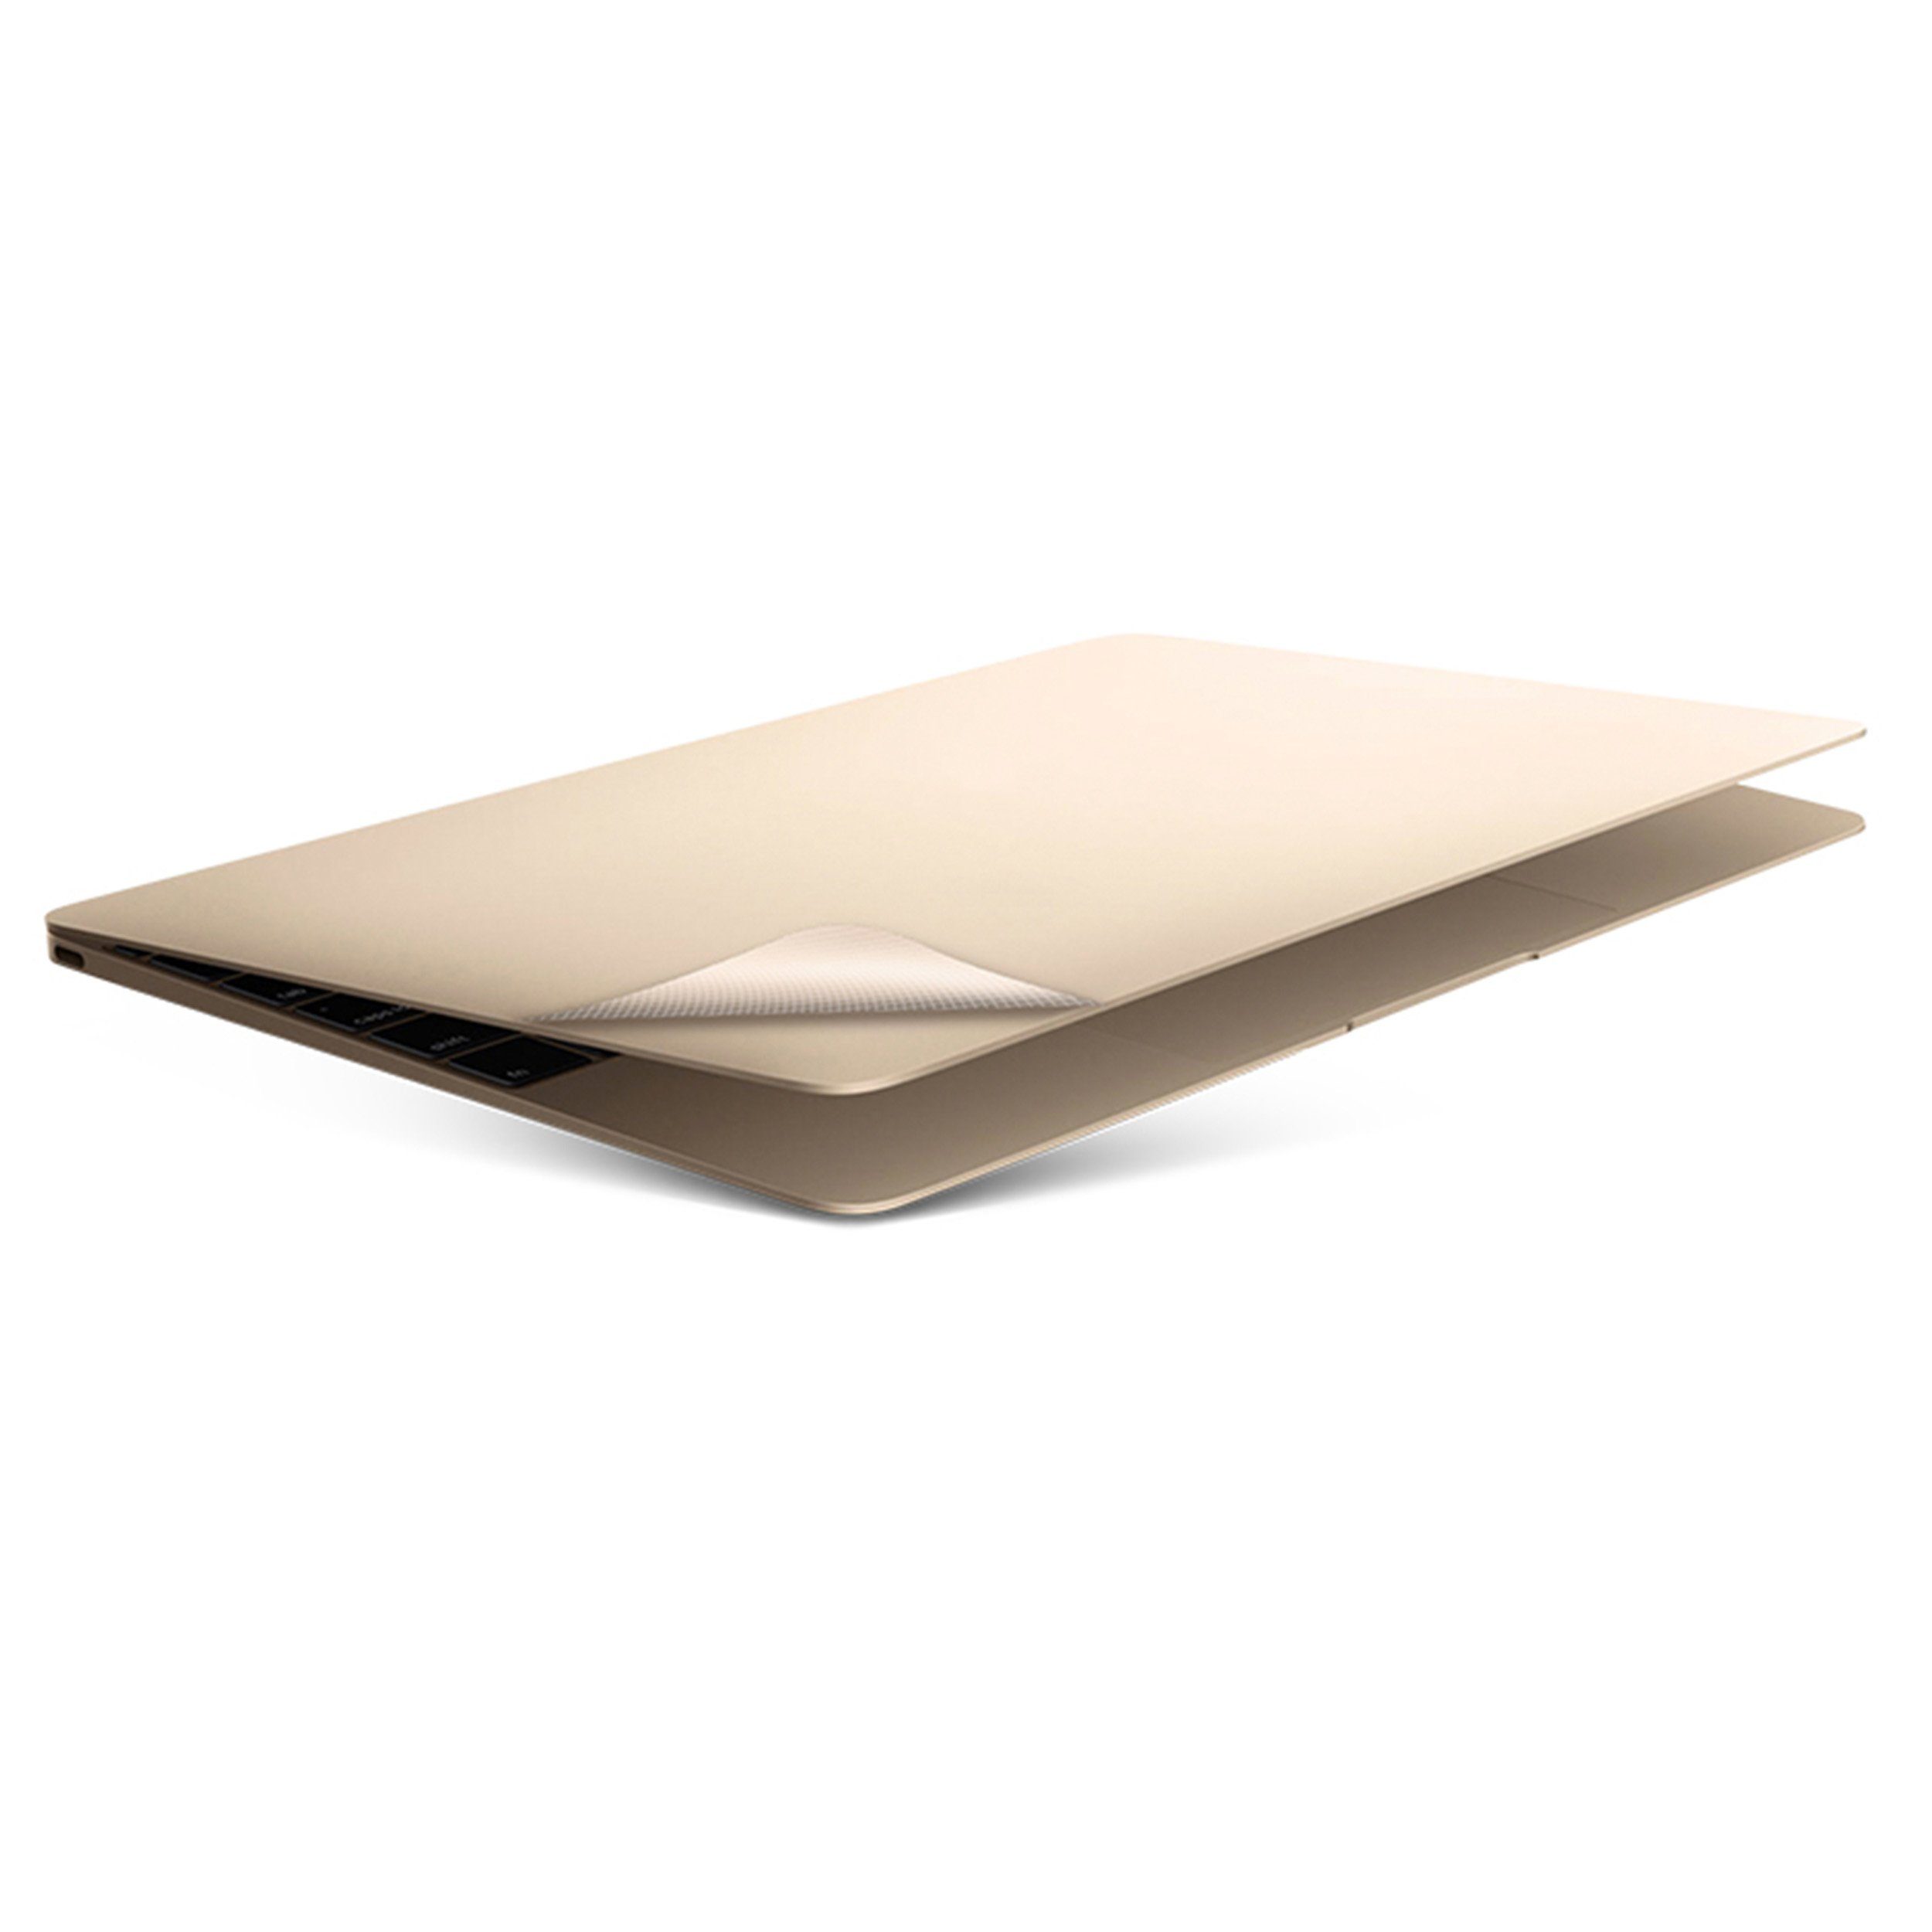 KMP Creative Lifesytle Product Schutzfolie Schutzfolie für 13" MacBook Air, Gold, (1-St), Schmutz- und wasserabweisende Oberfläche. Nur 0,2mm dick